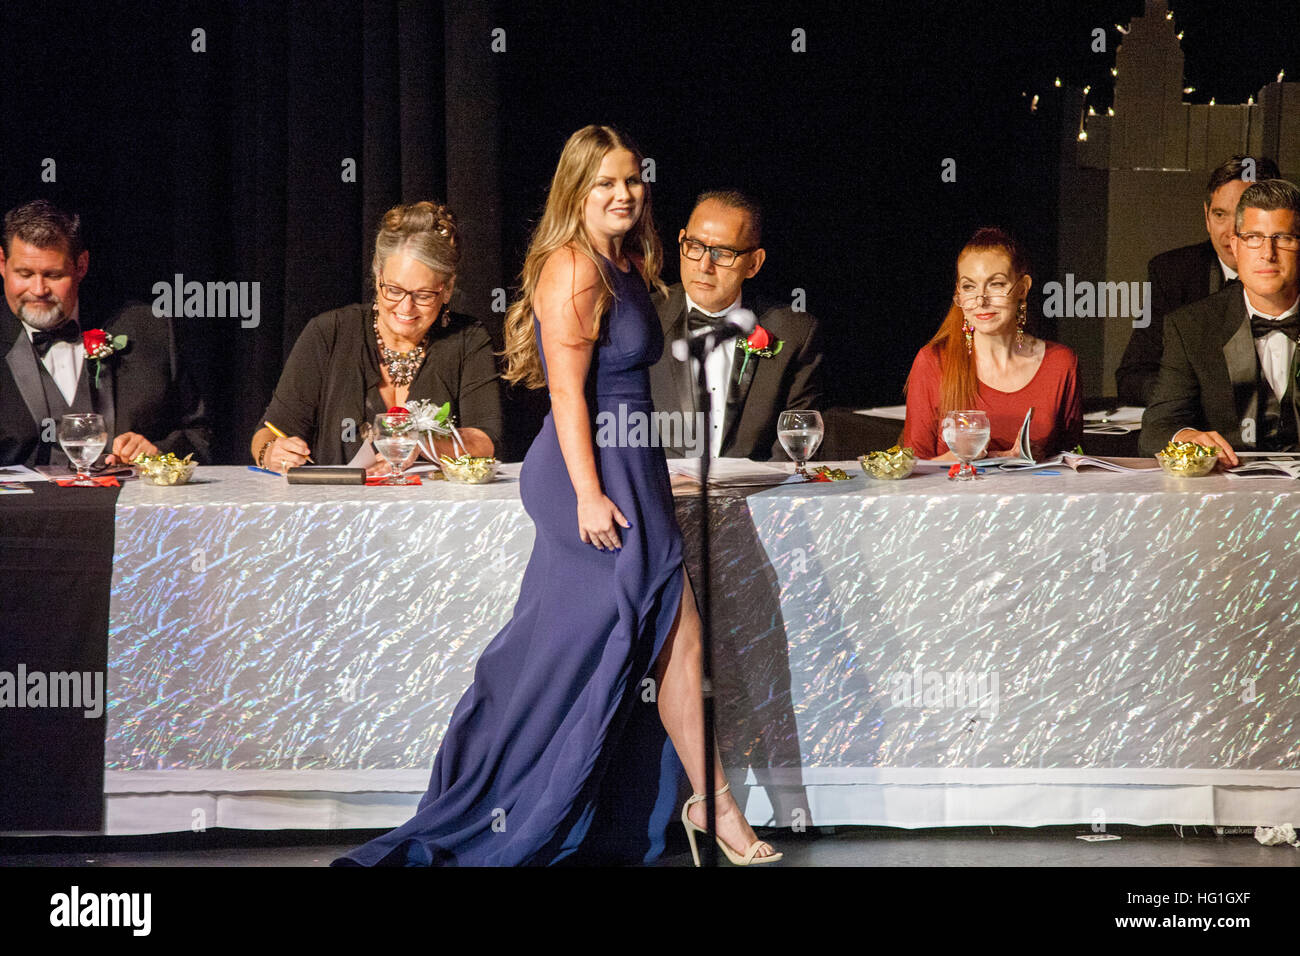 Los jueces del concurso de belleza ojo un concursante vestido formalmente como ella camina por su tabla en Huntington Beach, California. Foto de stock